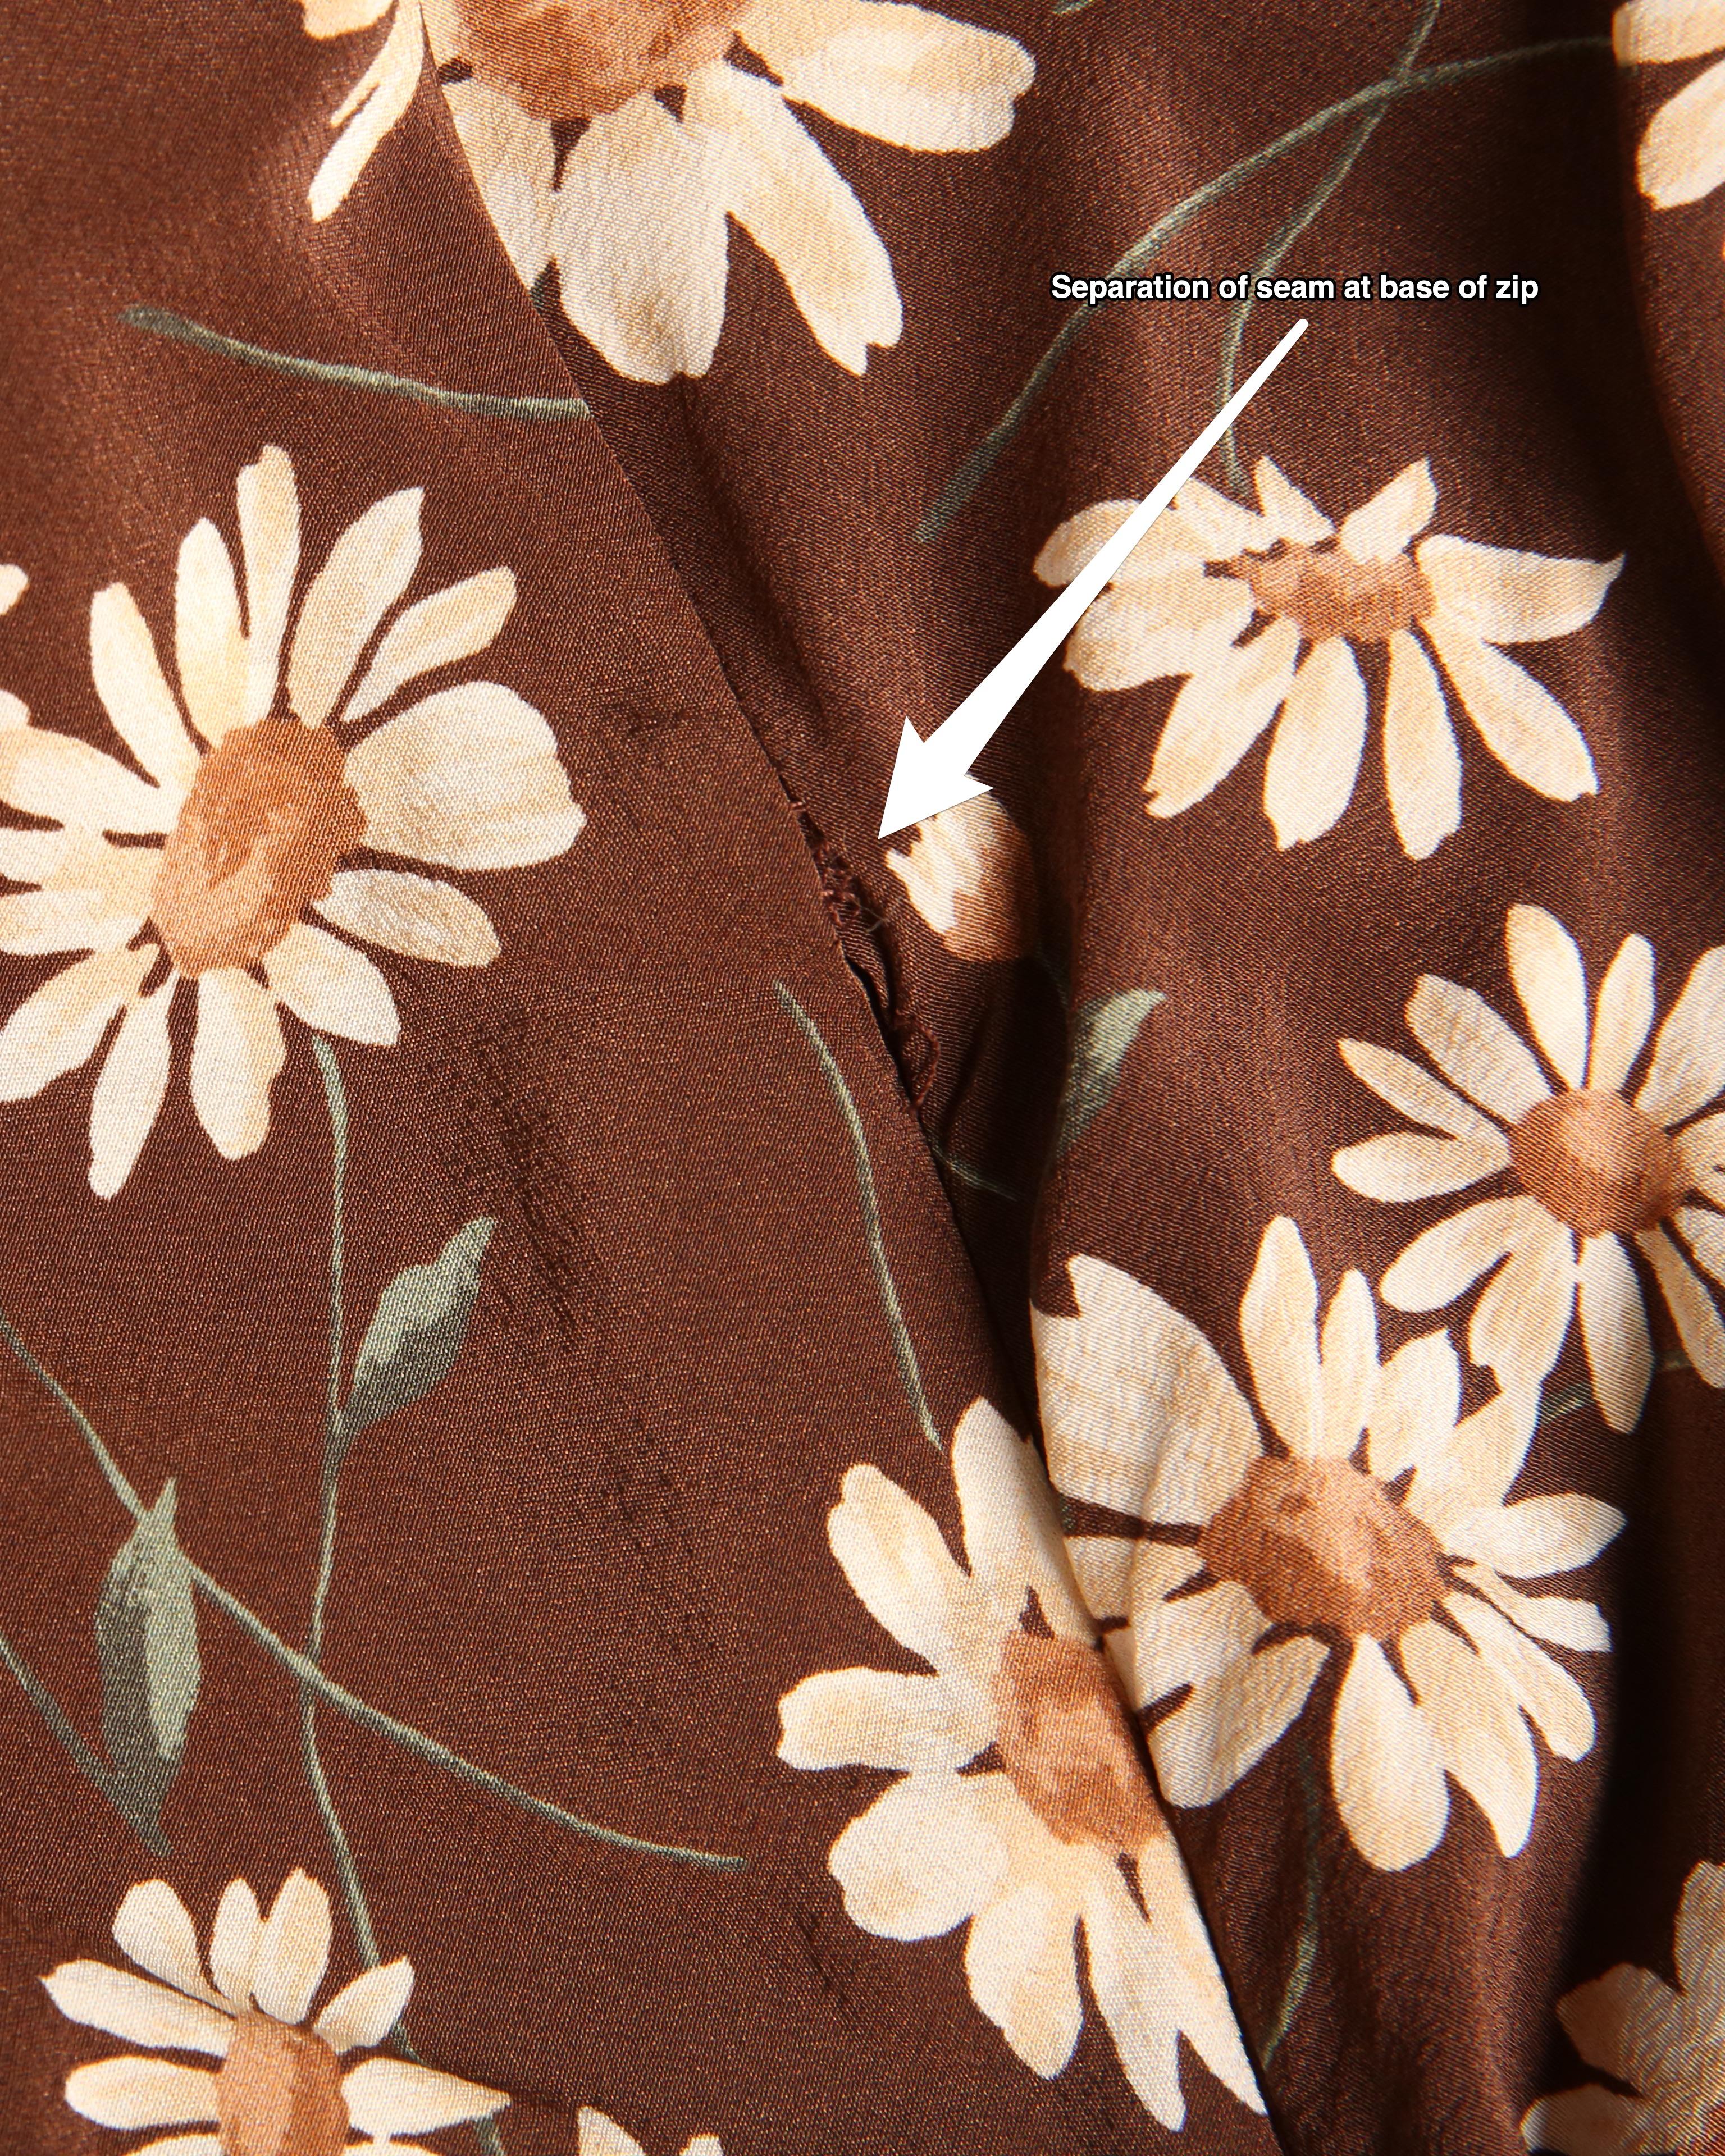 Michael Kors - Robe midi en soie marron et blanche à volants avec imprimé floral et marron marron, style thé, taille US 4 10